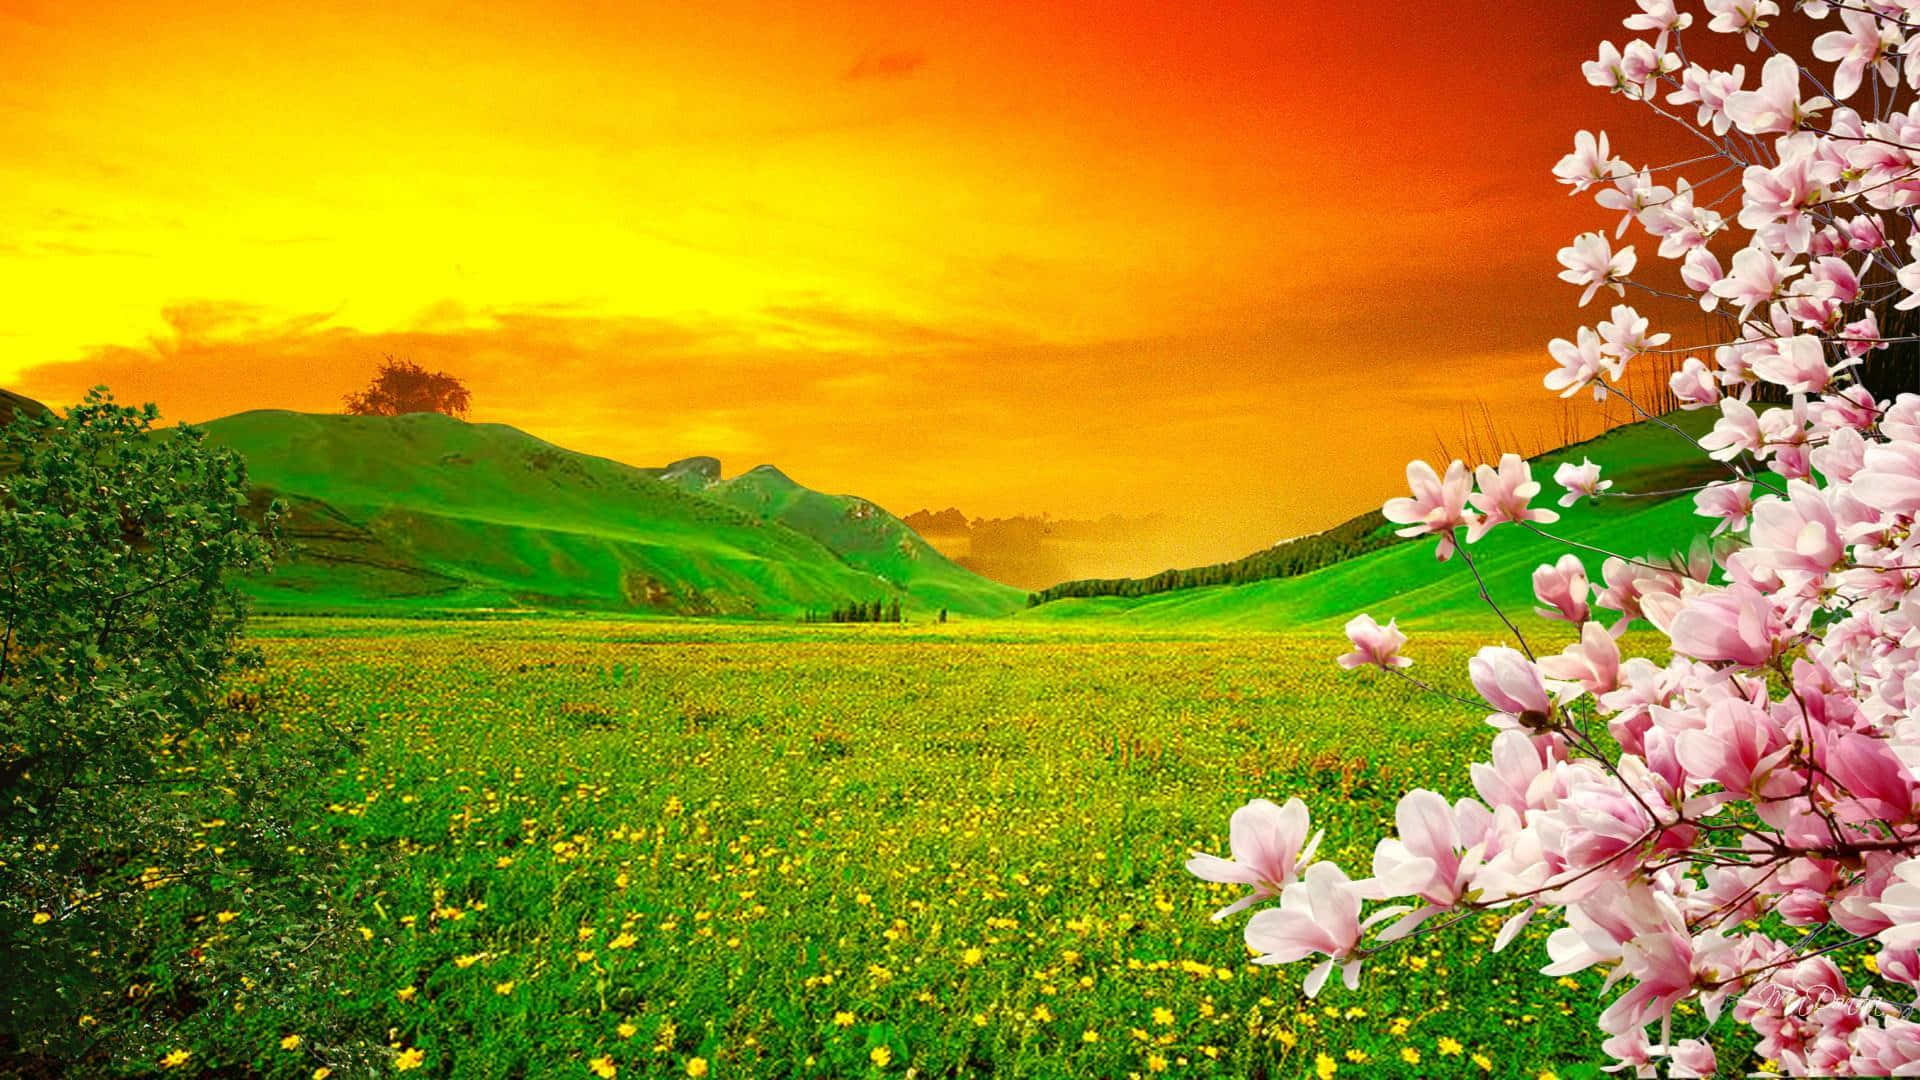 Enchanting Spring Sunset Wallpaper